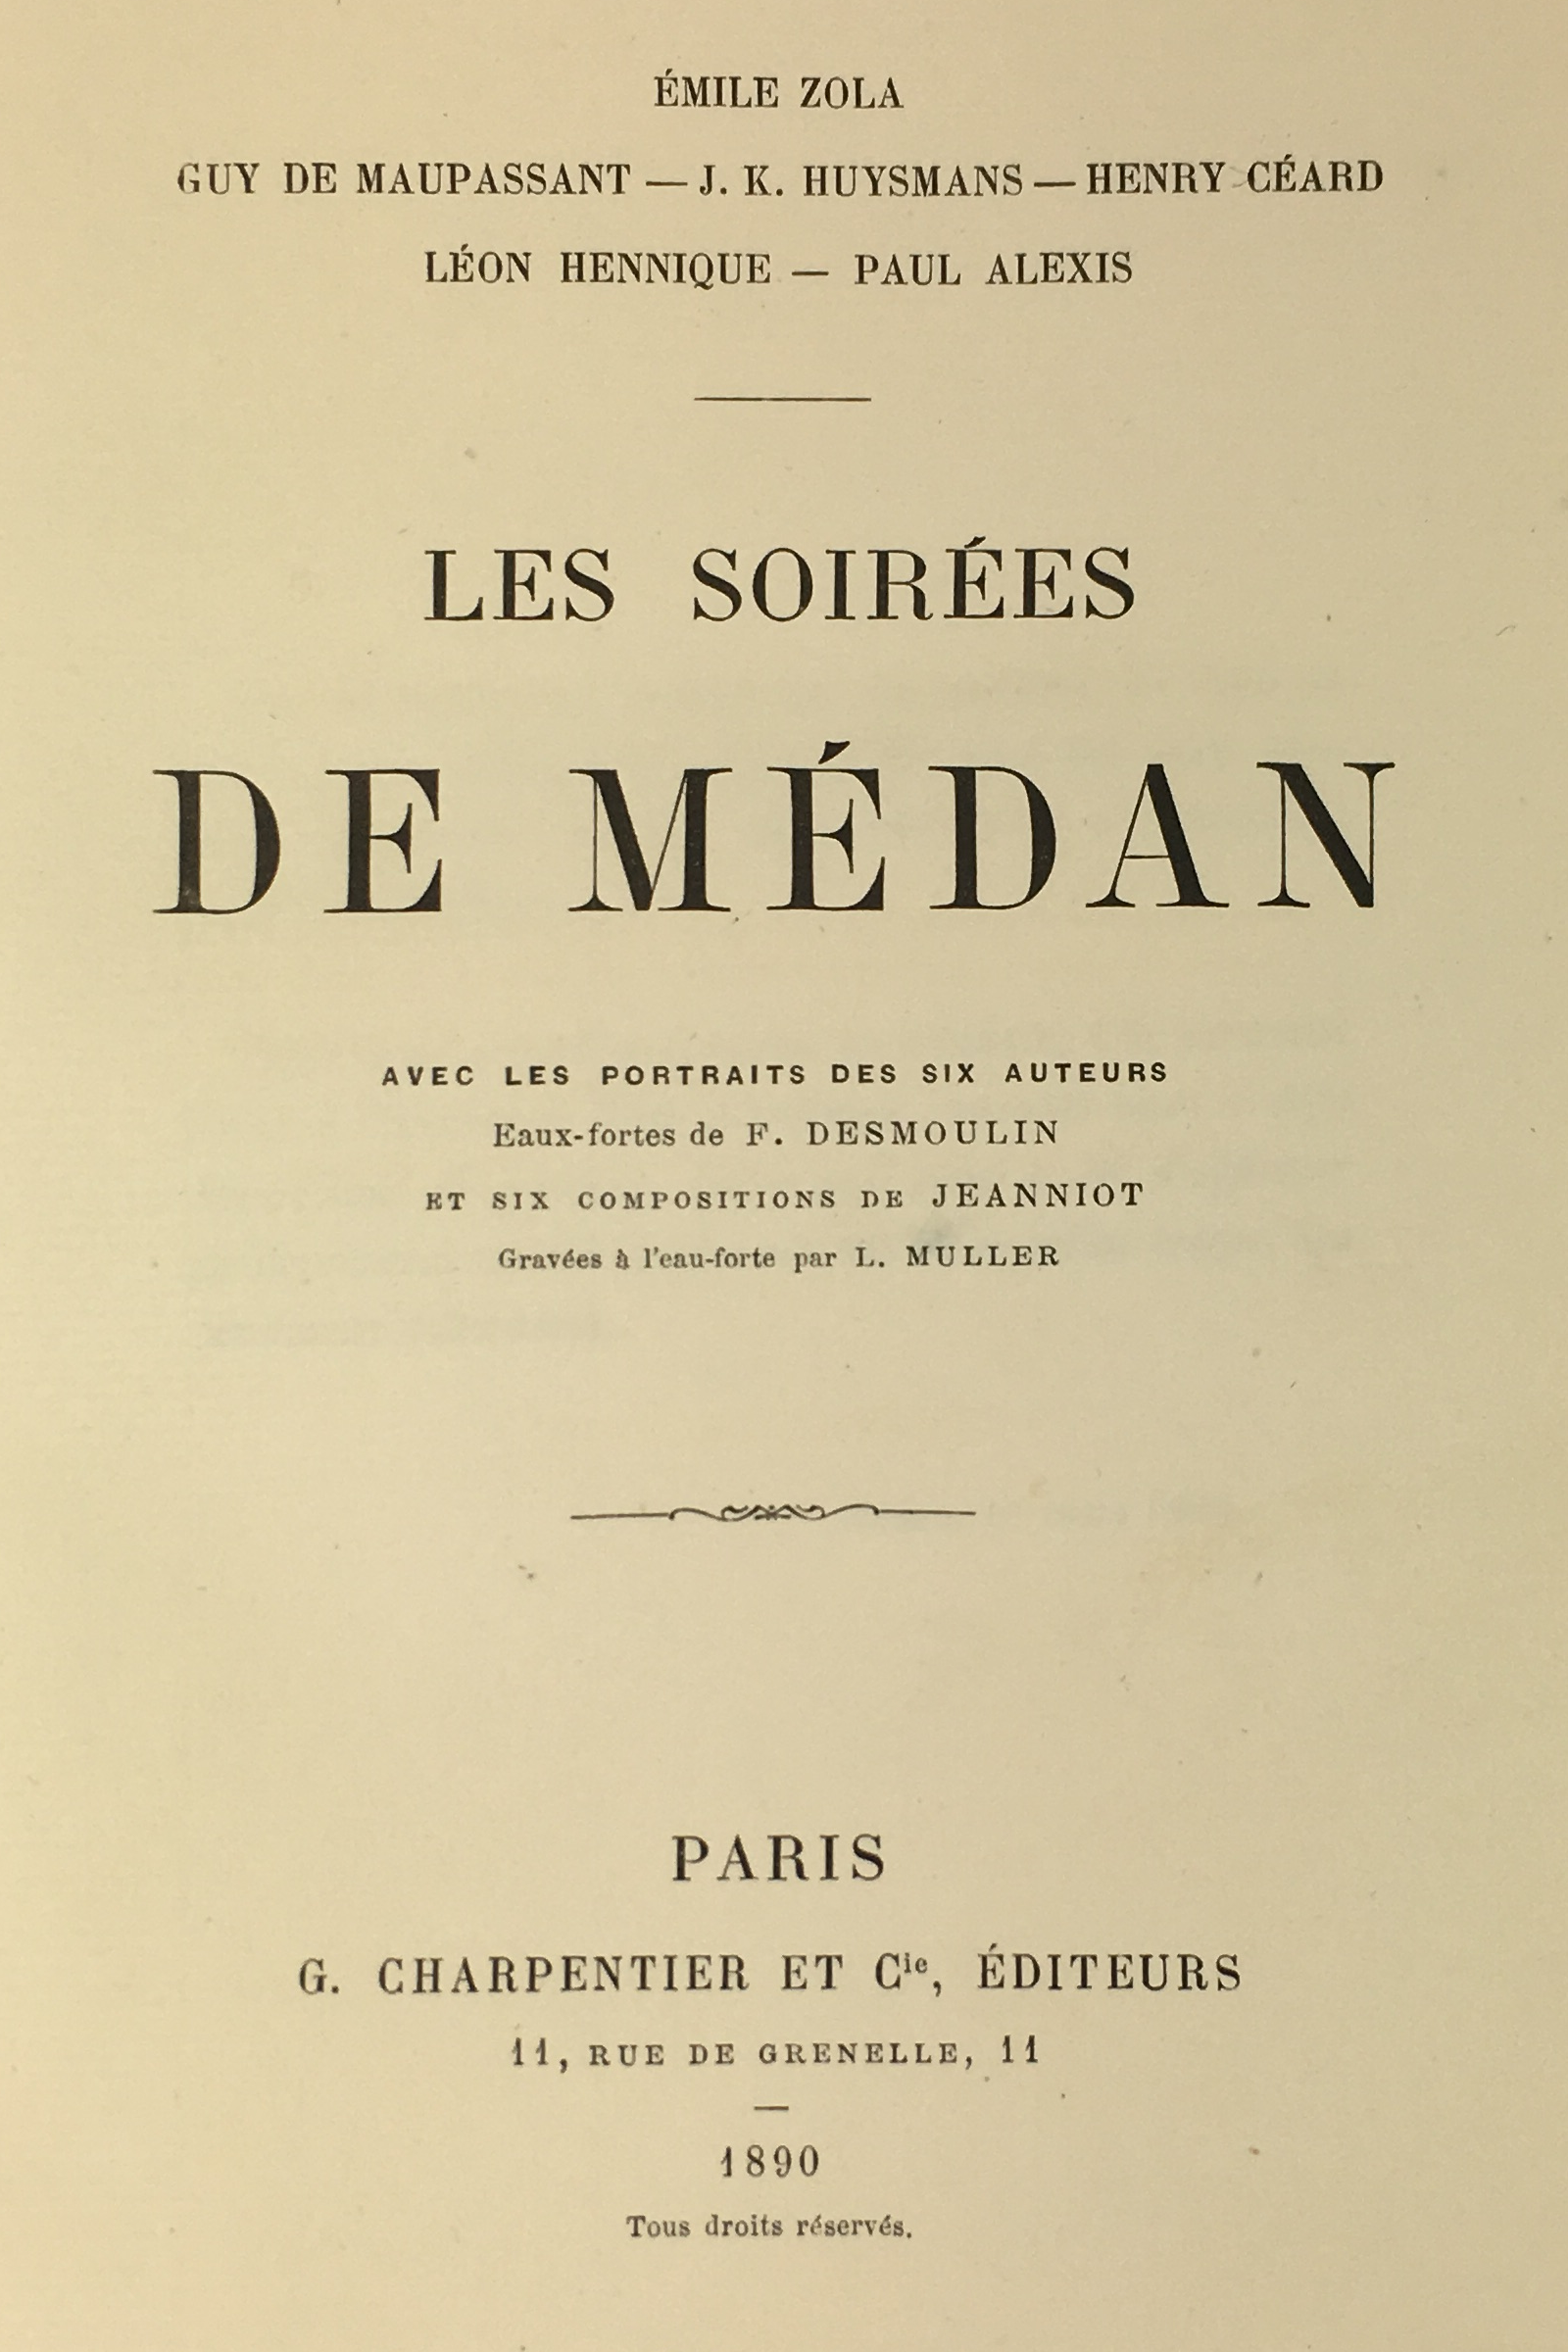 © Les soirées de Médan, 1890, fonds Berté coll. MGD